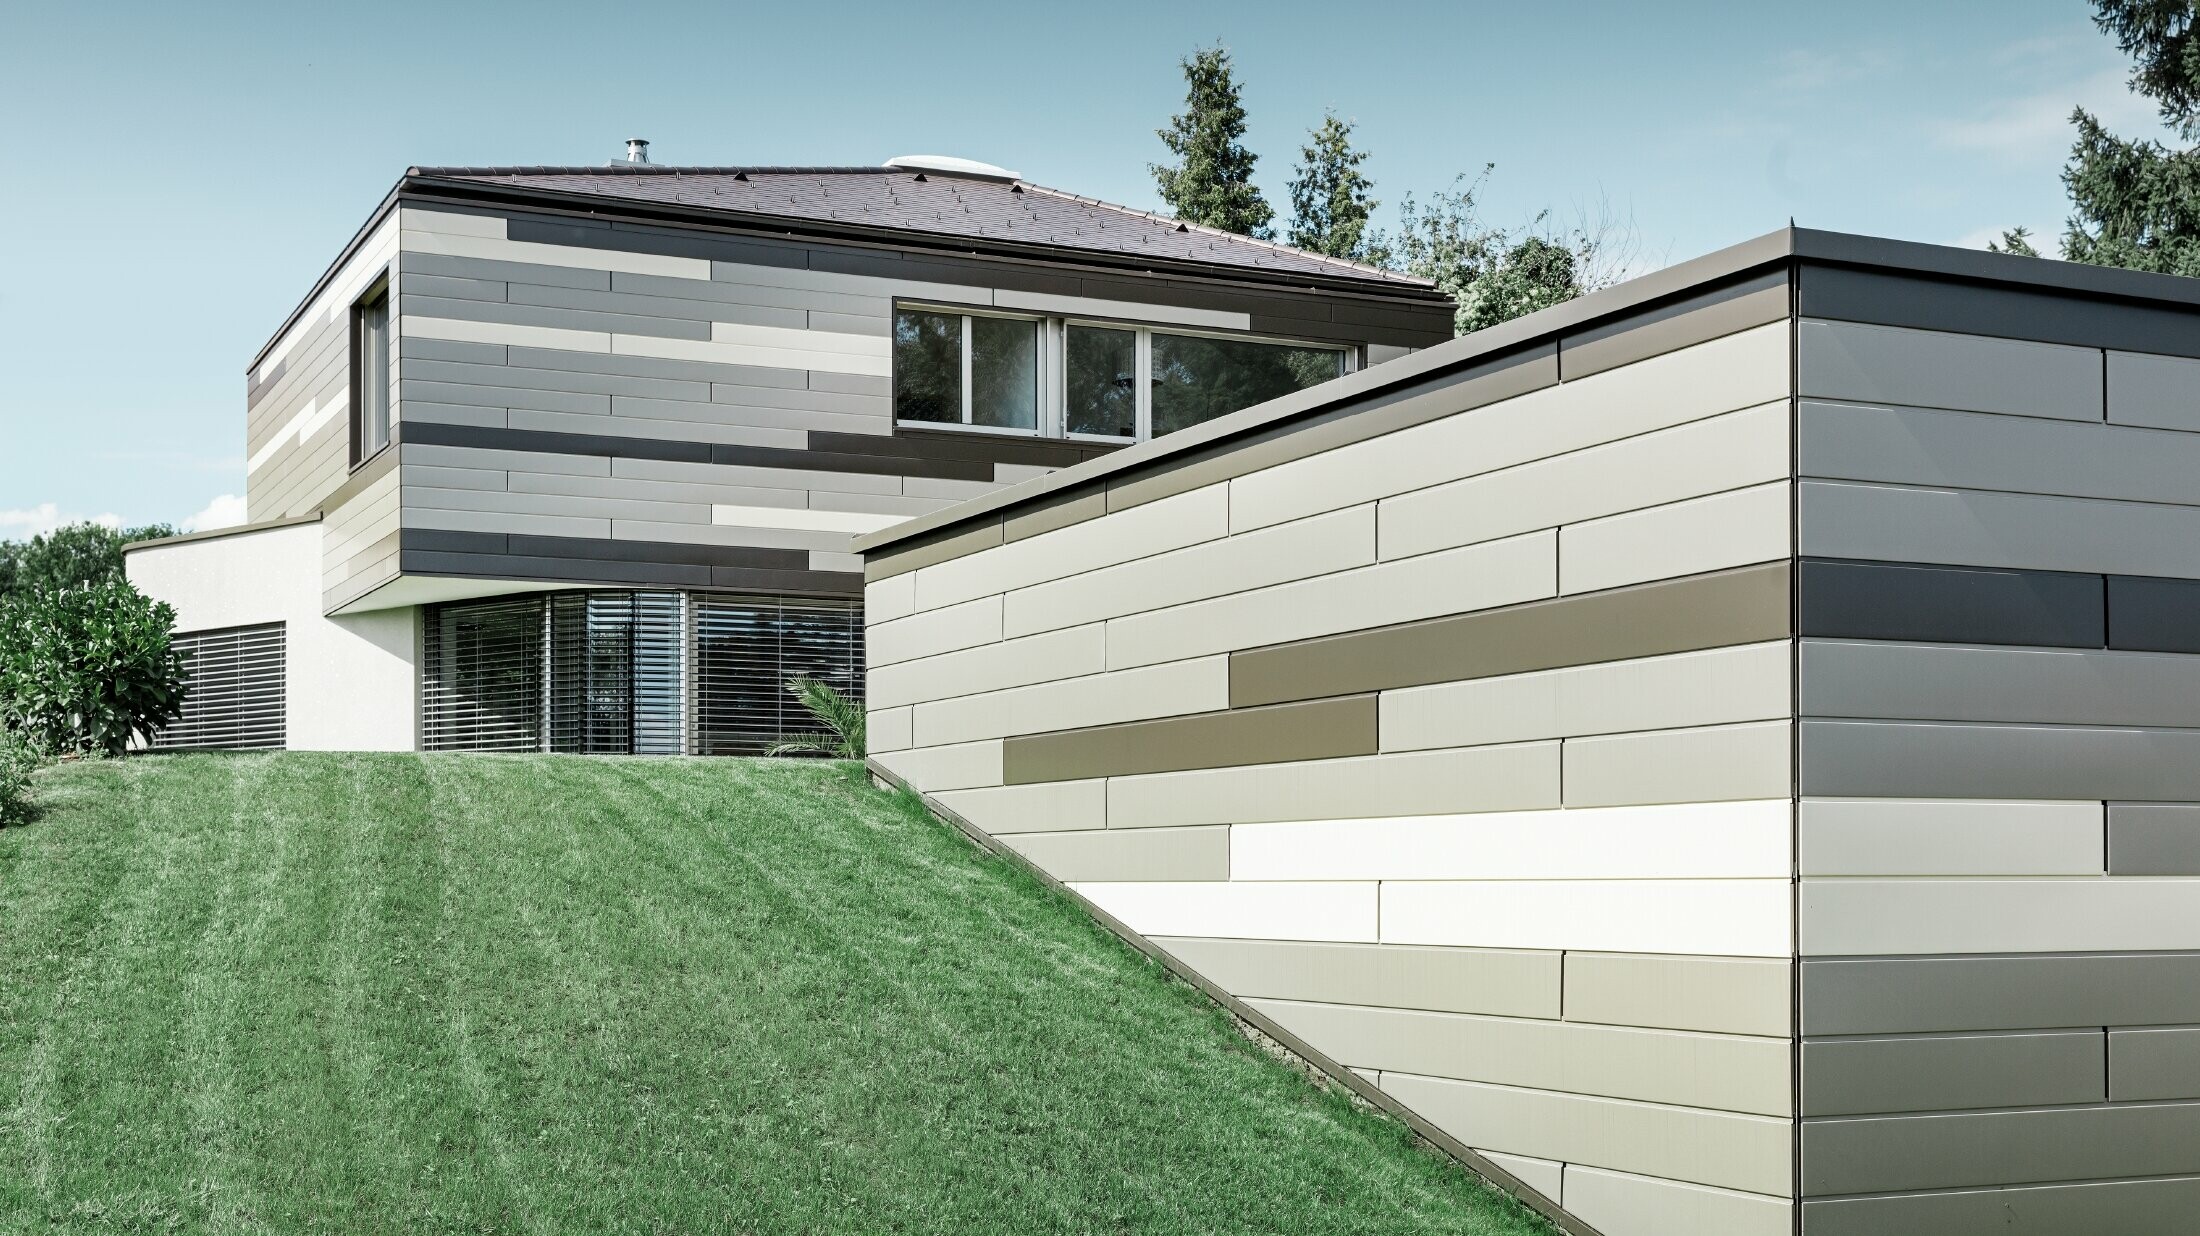 Nowoczesny dom jednorodzinny z płaskim dachem i zadaszonym tarasem, z indywidualnie zaprojektowaną elewacją aluminiową wykonaną z sidingu PREFA w kolorze brązowym, brązu i kości słoniowej